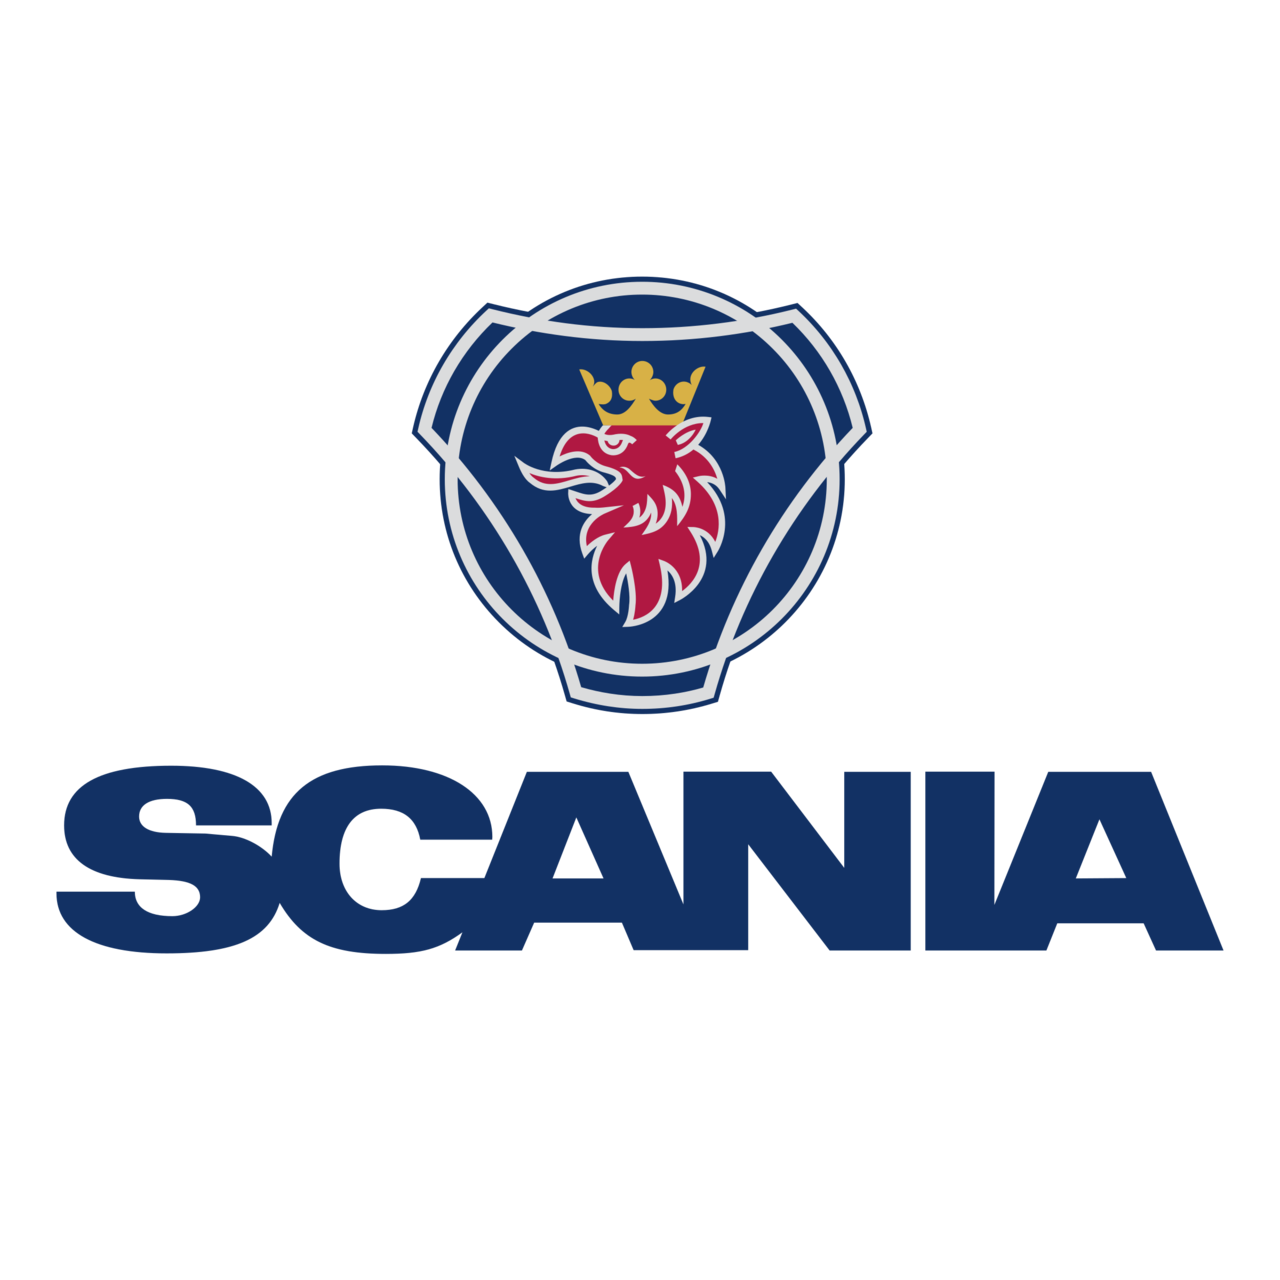 Logo Scania Png - KibrisPDR